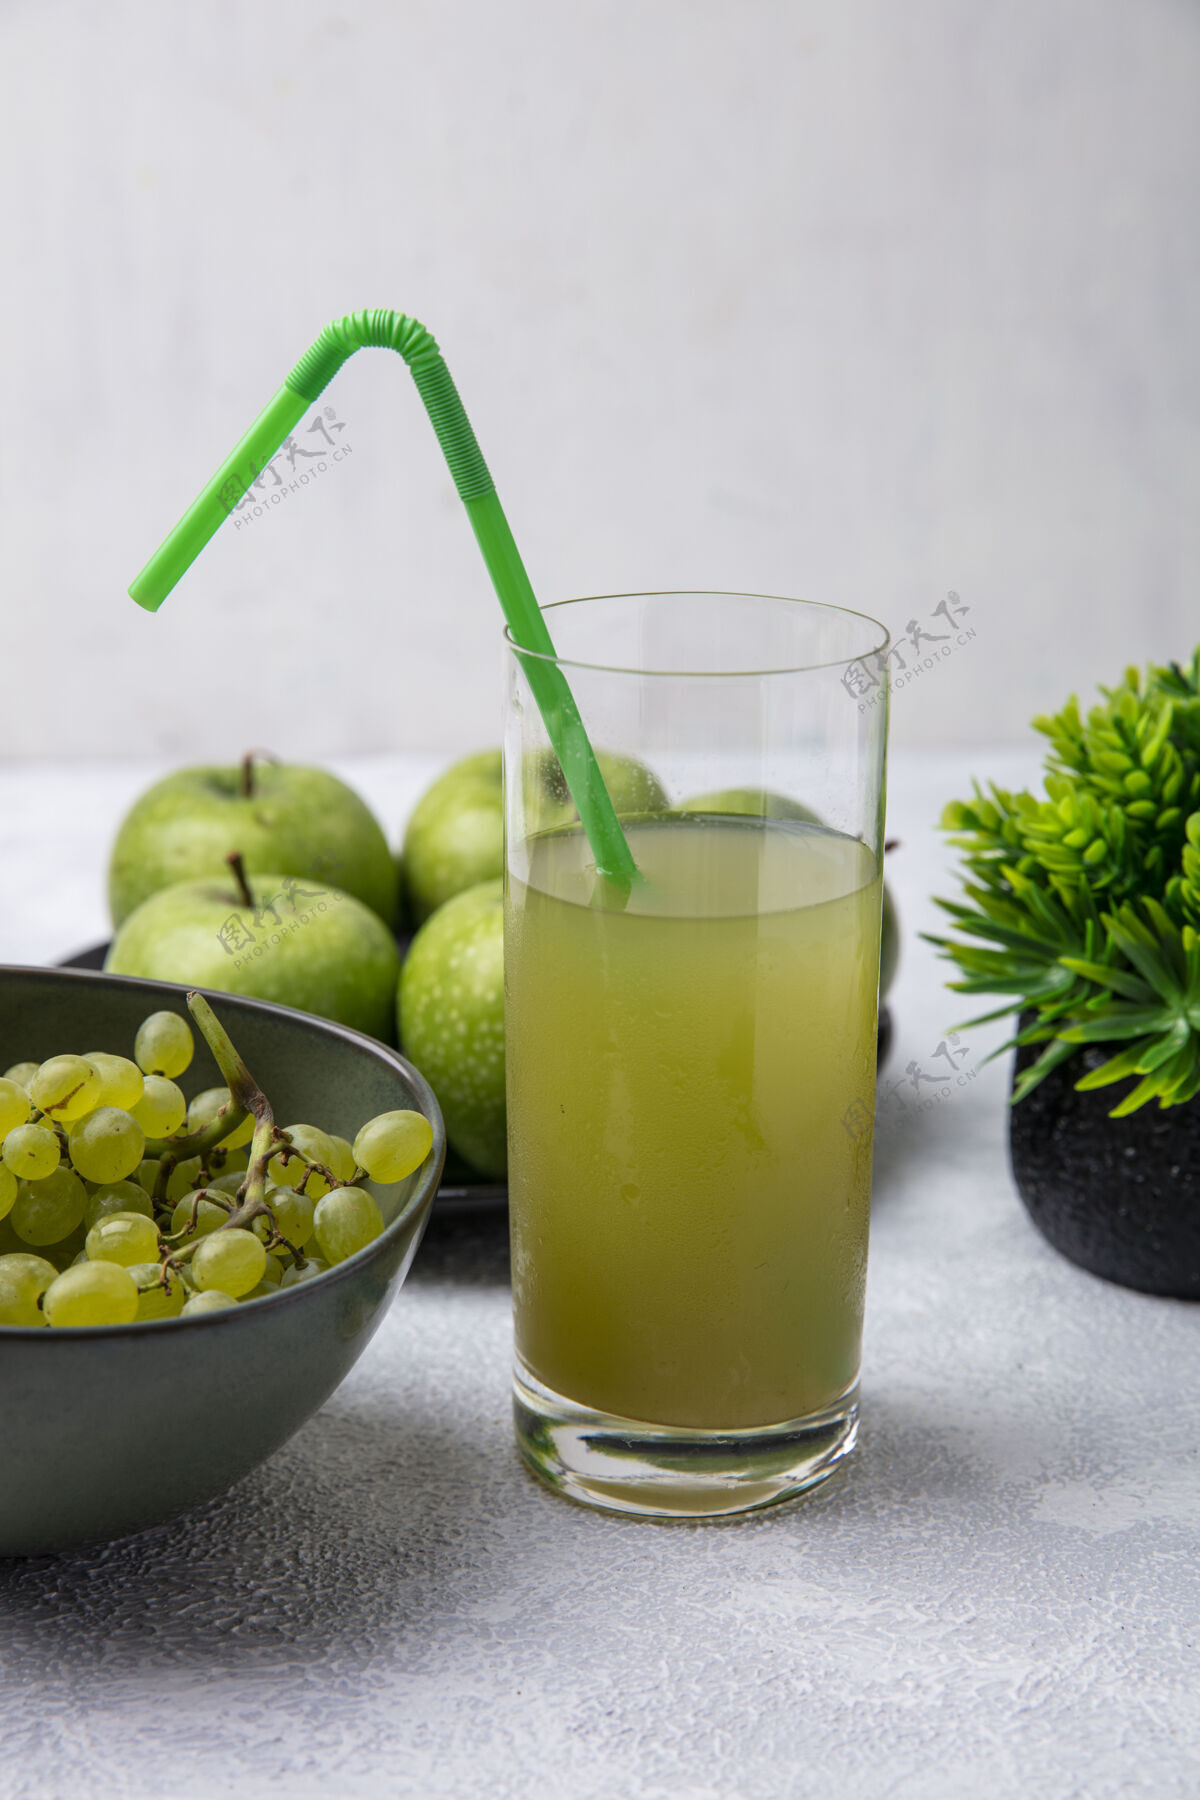 稻草正面视图苹果汁在一个玻璃与绿色吸管绿色葡萄和绿色苹果碗在白色的背景绿色食物果汁